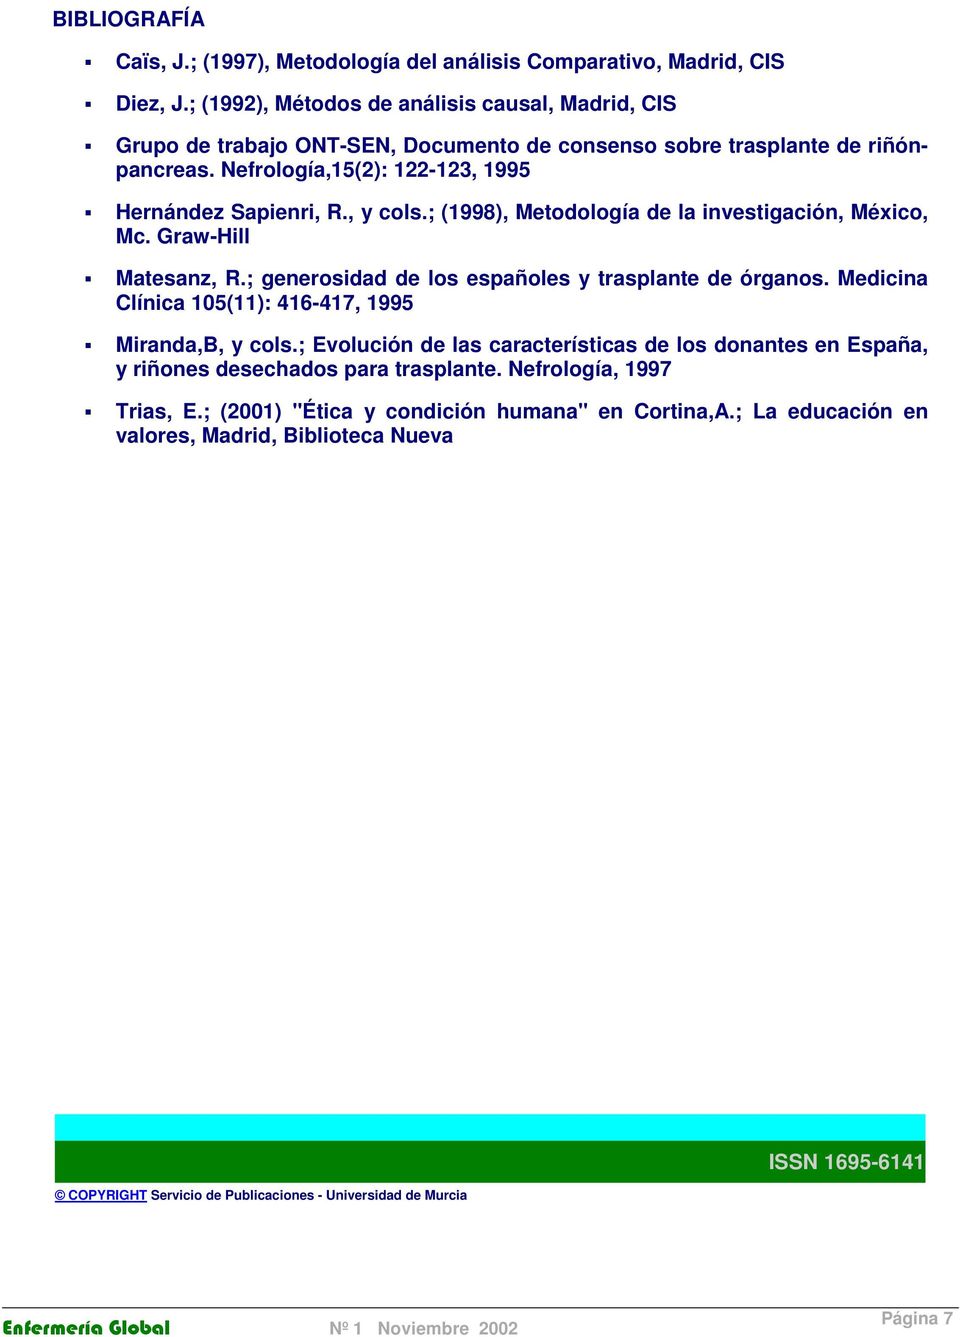 ; (1998), Metdlgía de la investigación, Méxic, Mc. Graw-Hill Matesanz, R.; genersidad de ls españles y trasplante de órgans. Medicina Clínica 105(11): 416-417, 1995 Miranda,B, y cls.